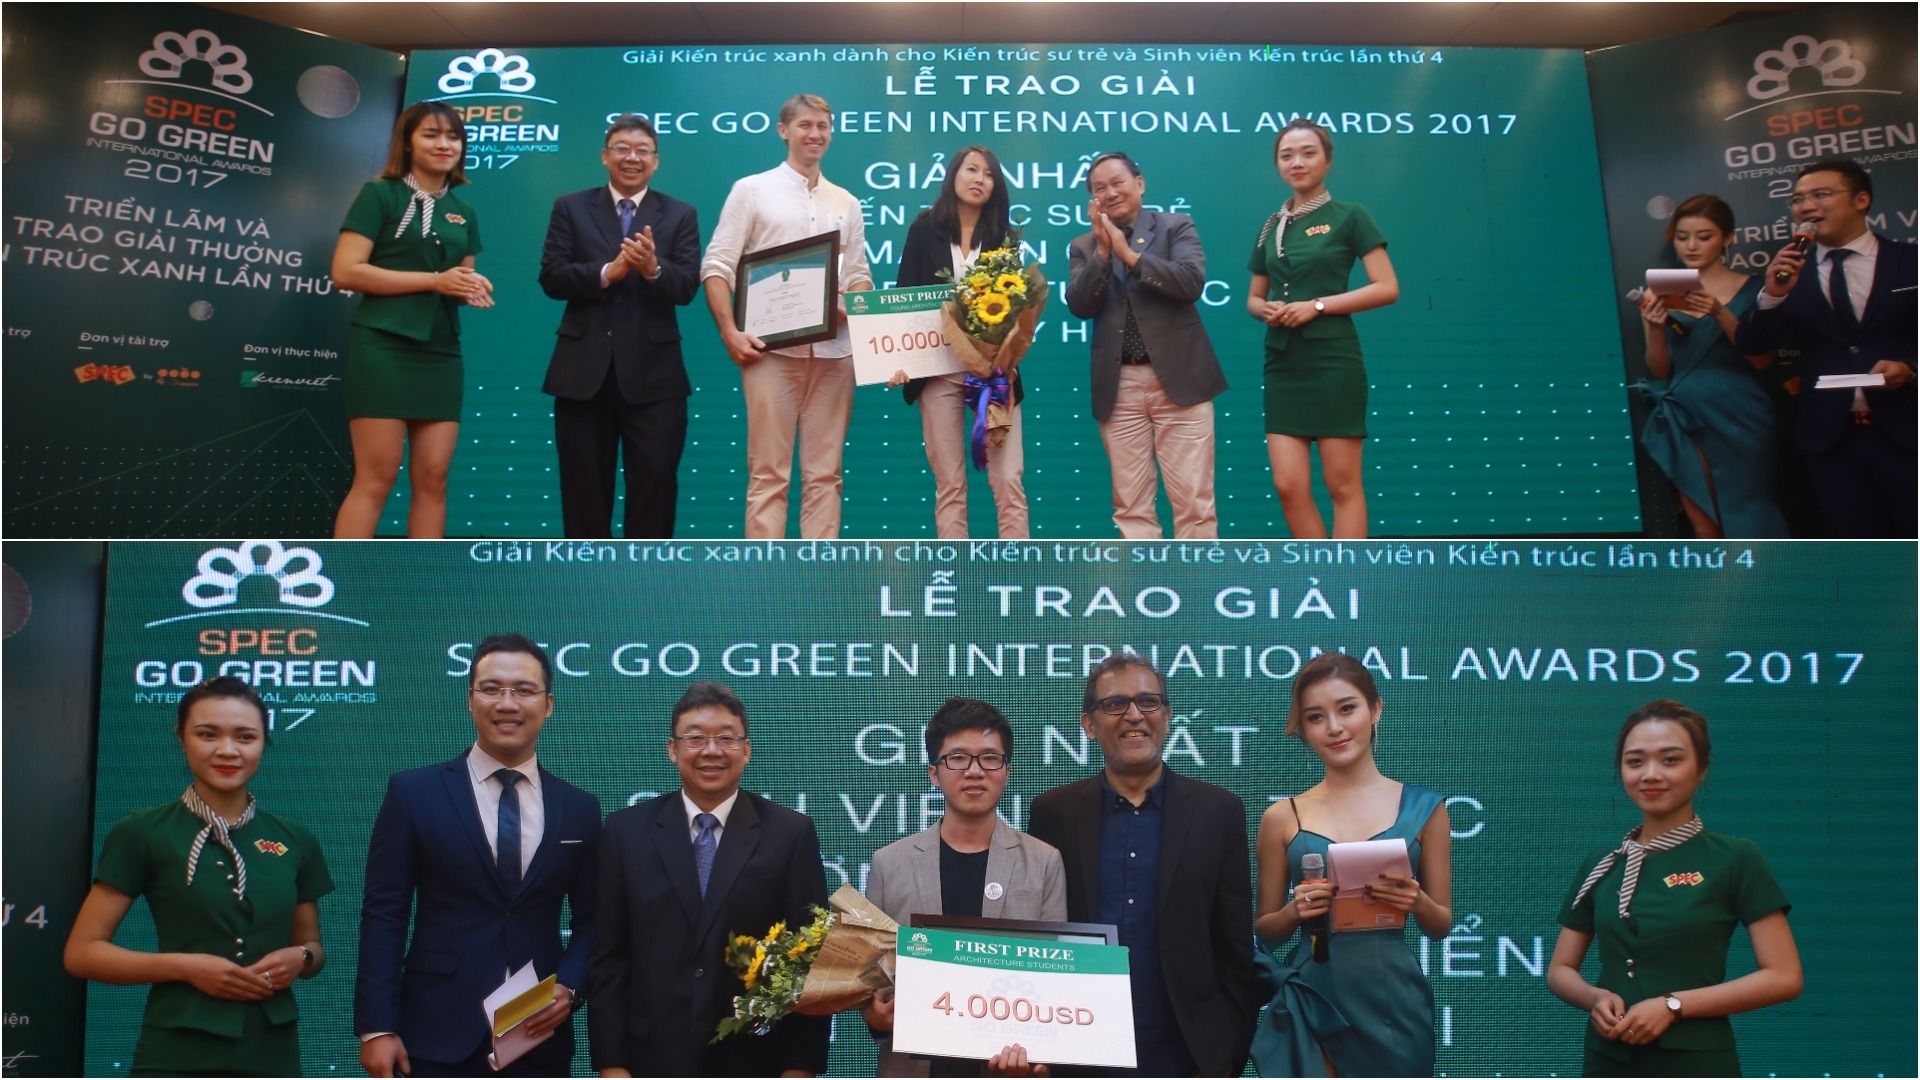 kienviet spec go green international awards 2017 01